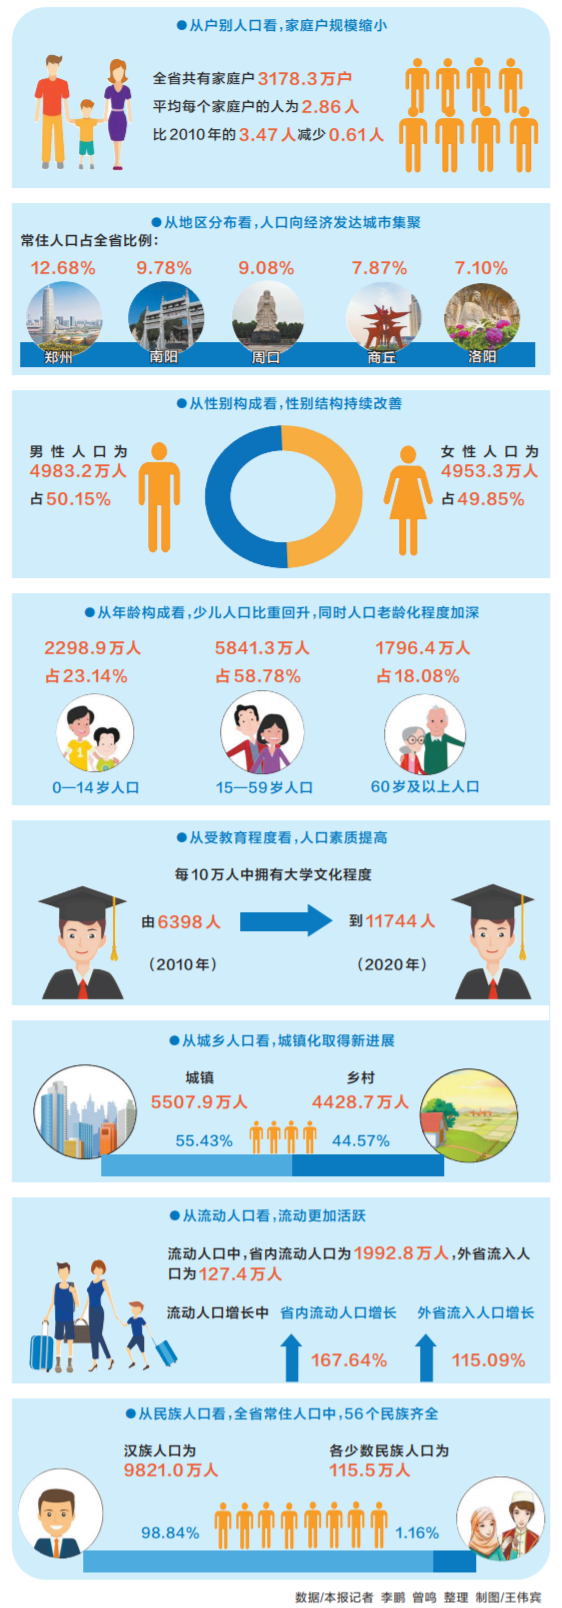 河南省第七次全国人口普查主要数据公布 9936.6万人 常住人口居全国第三